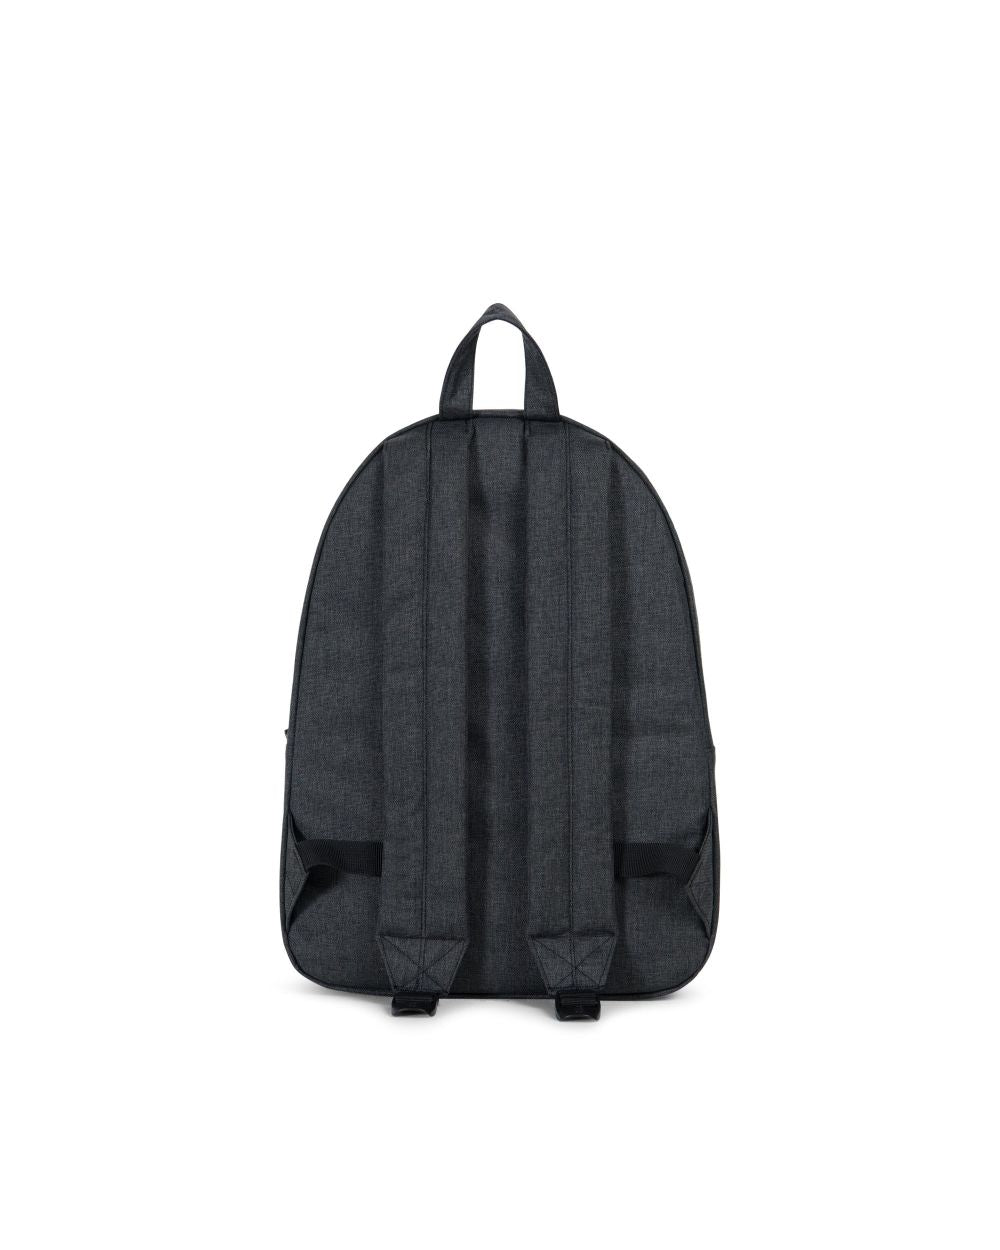 Herschel Supply Co. - Classic Backpack, Black Crosshatch